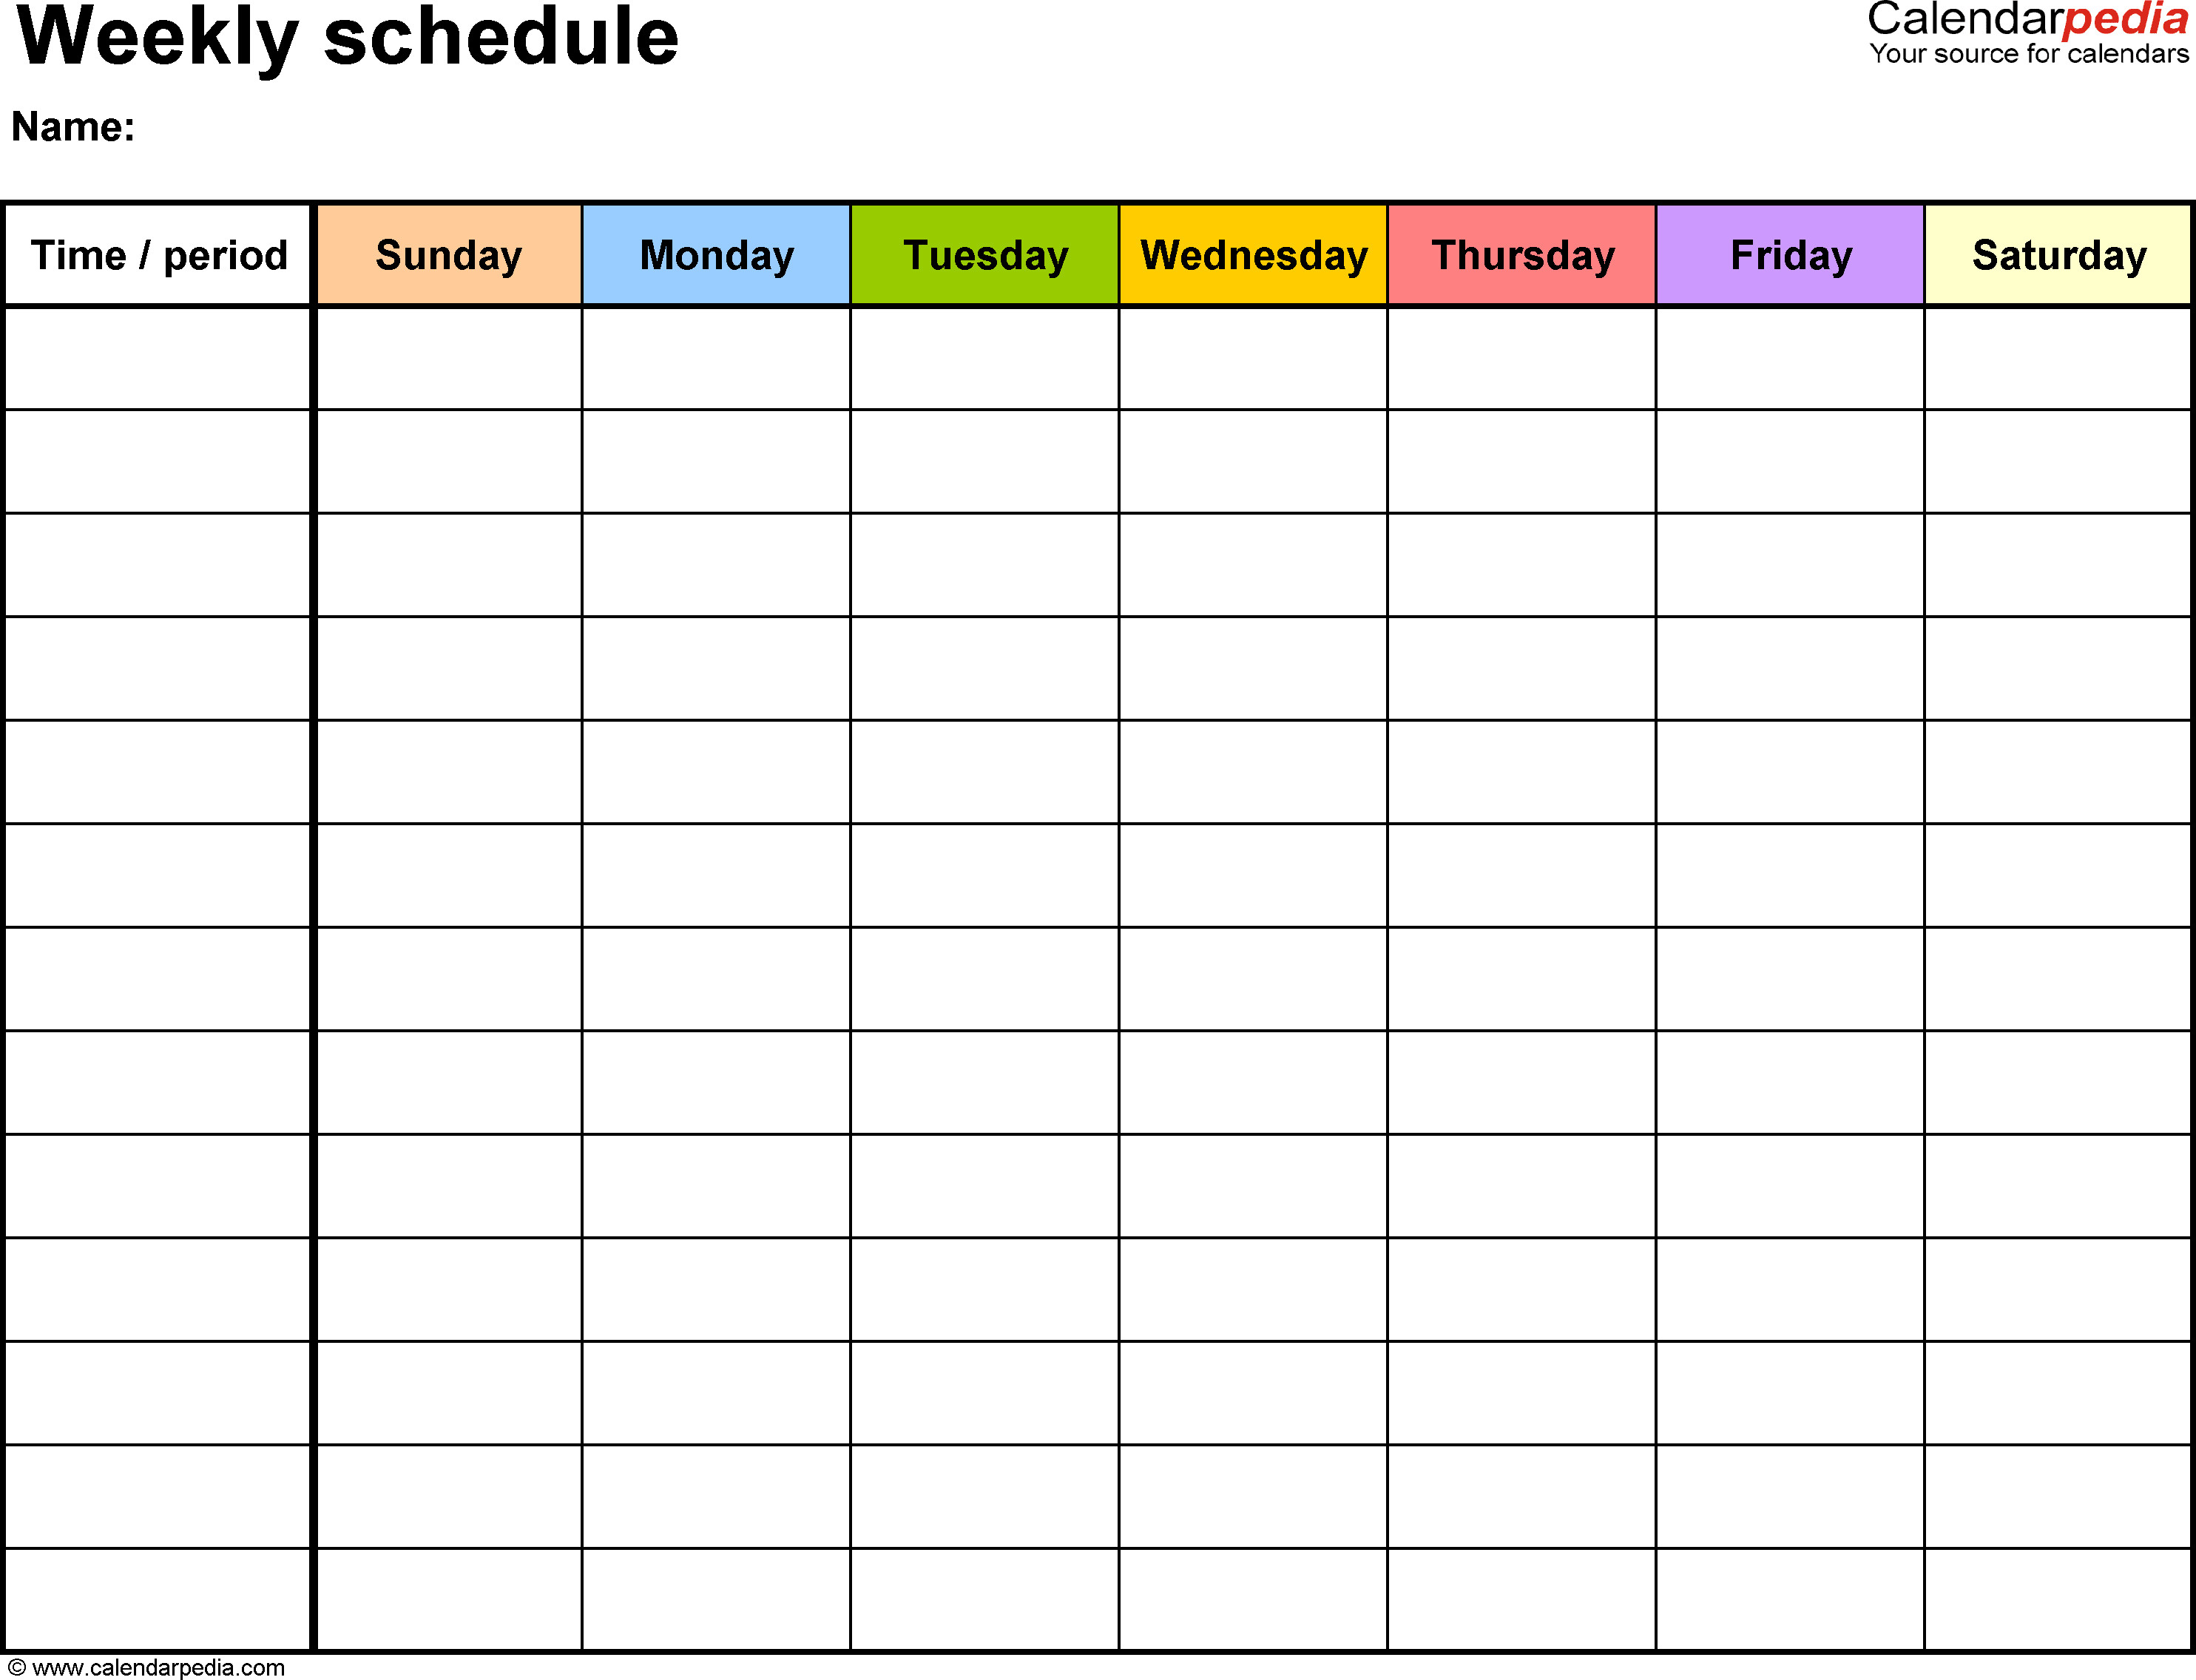 Week Planner Template Word 5 Weekly Planner Templates Excel Pdf formats